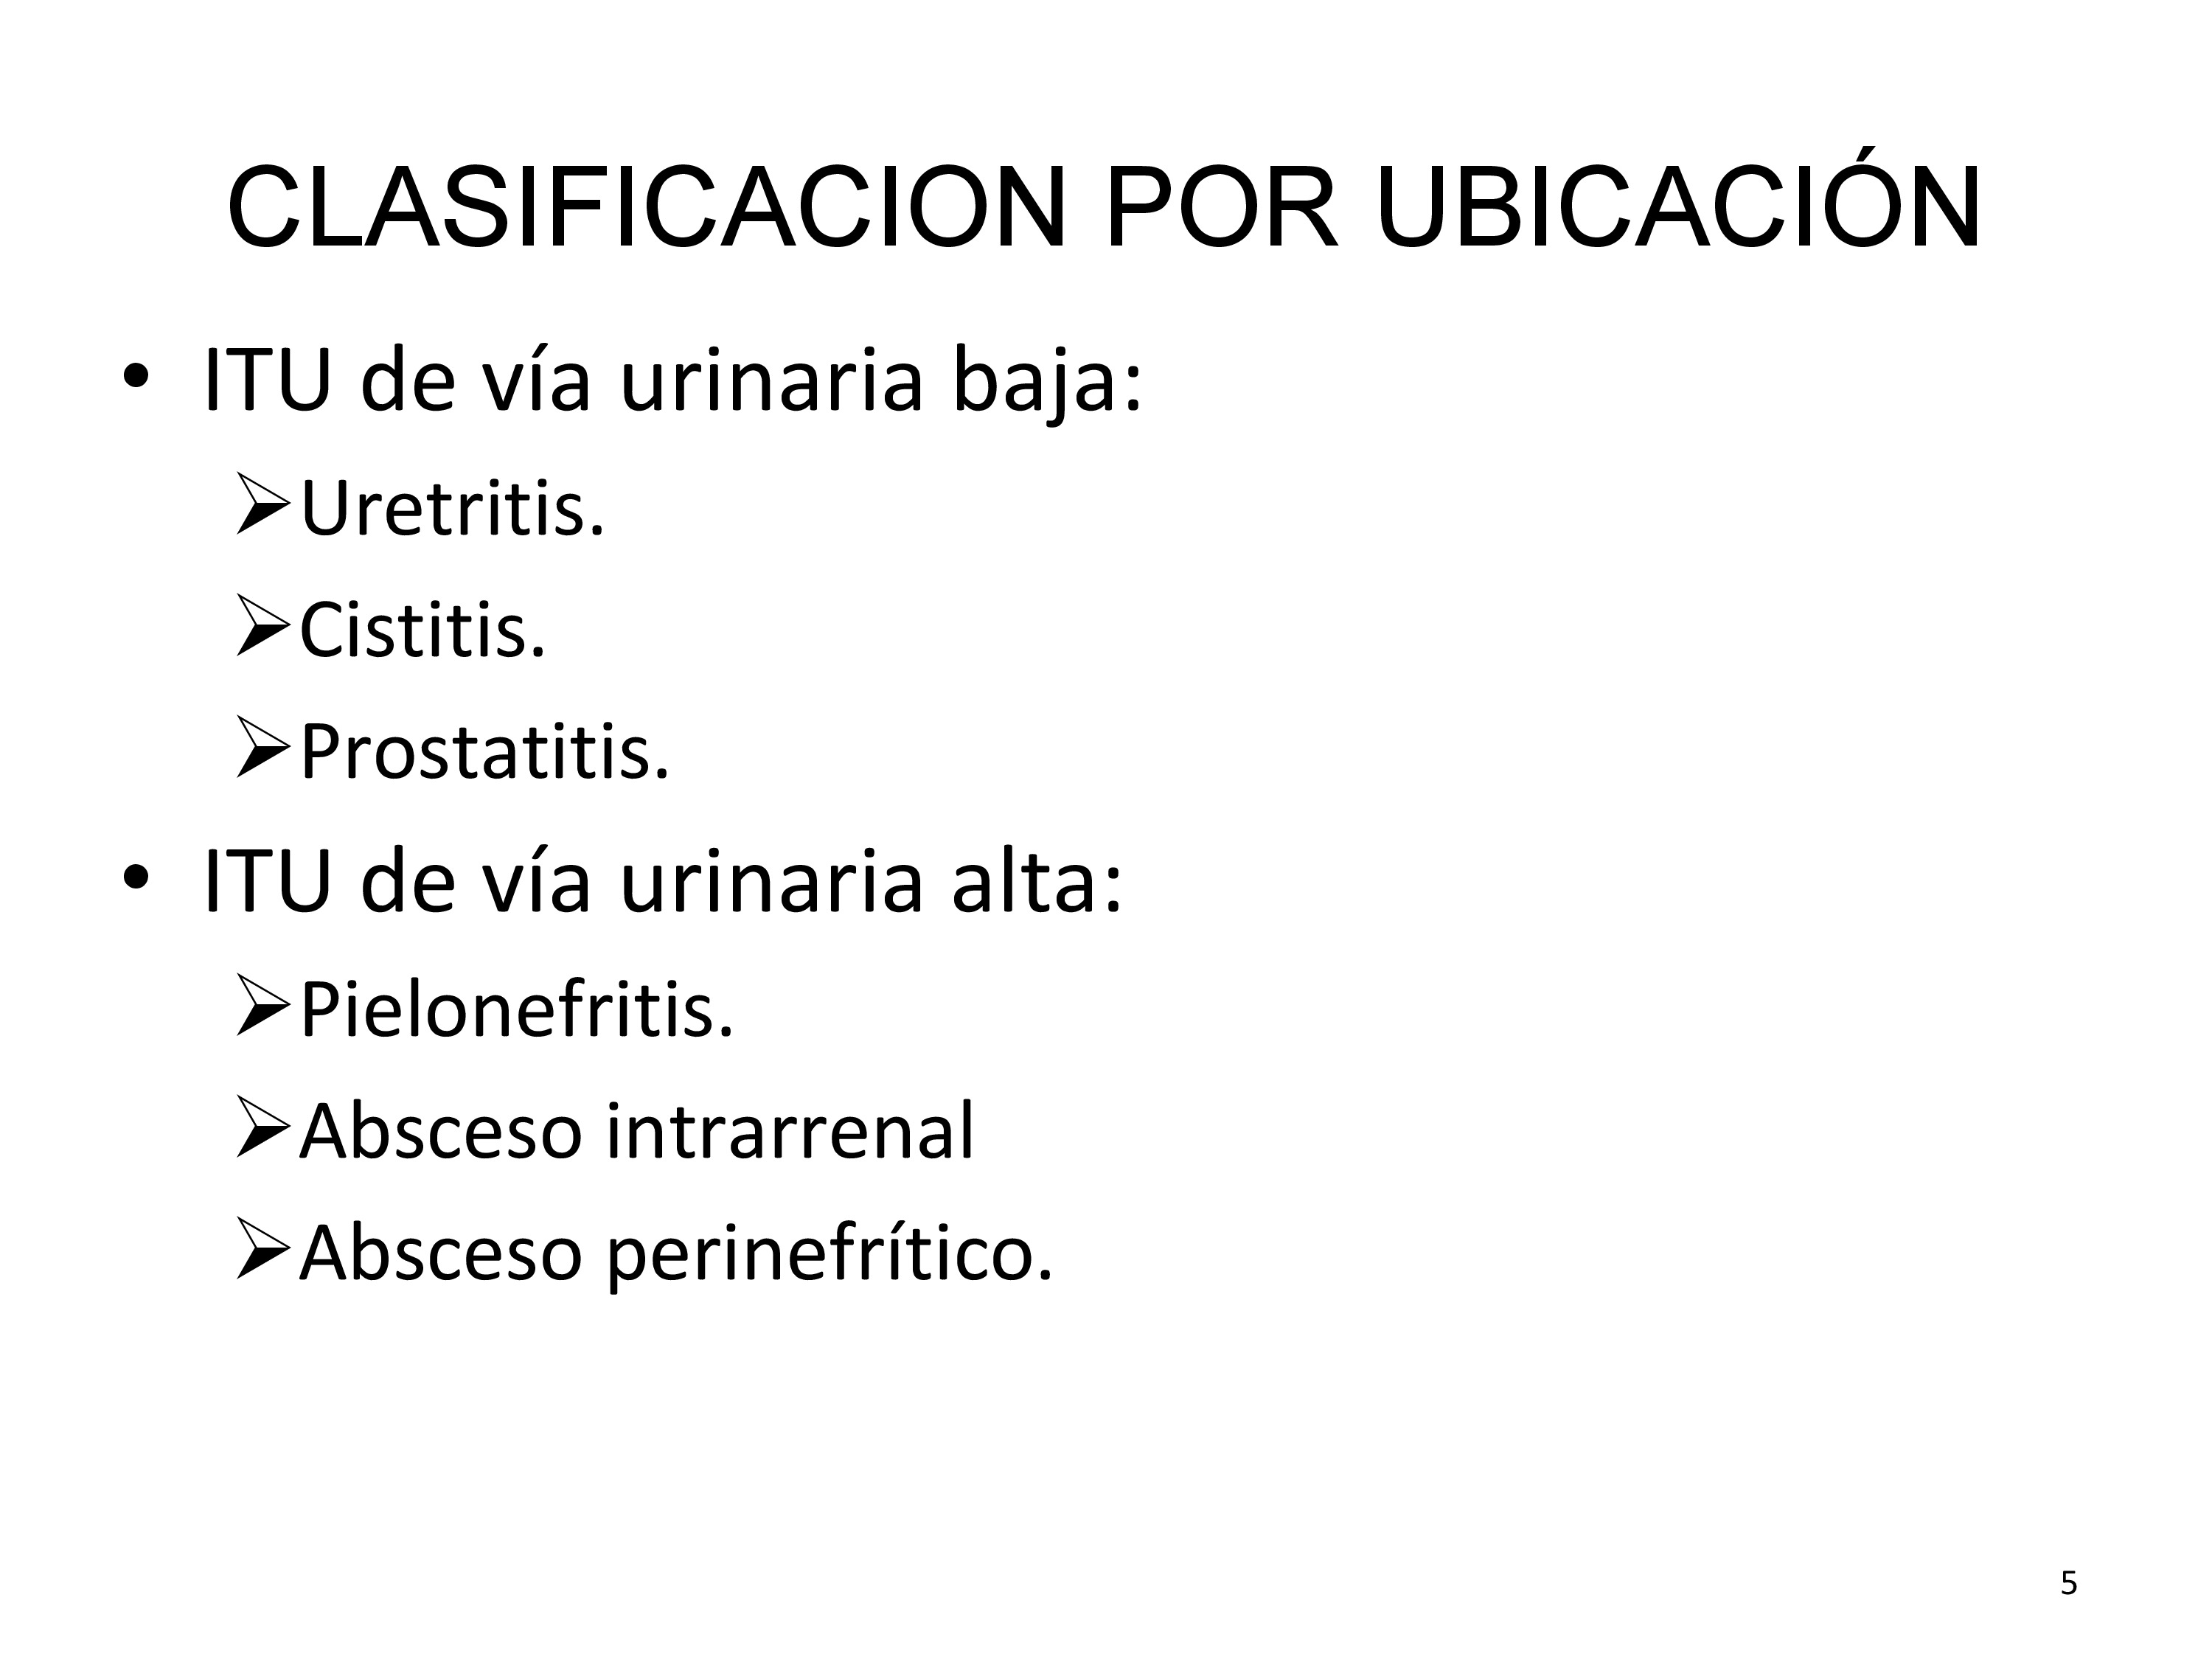 Clasificación en función de su localización anatómica concreta en el tracto urinario.